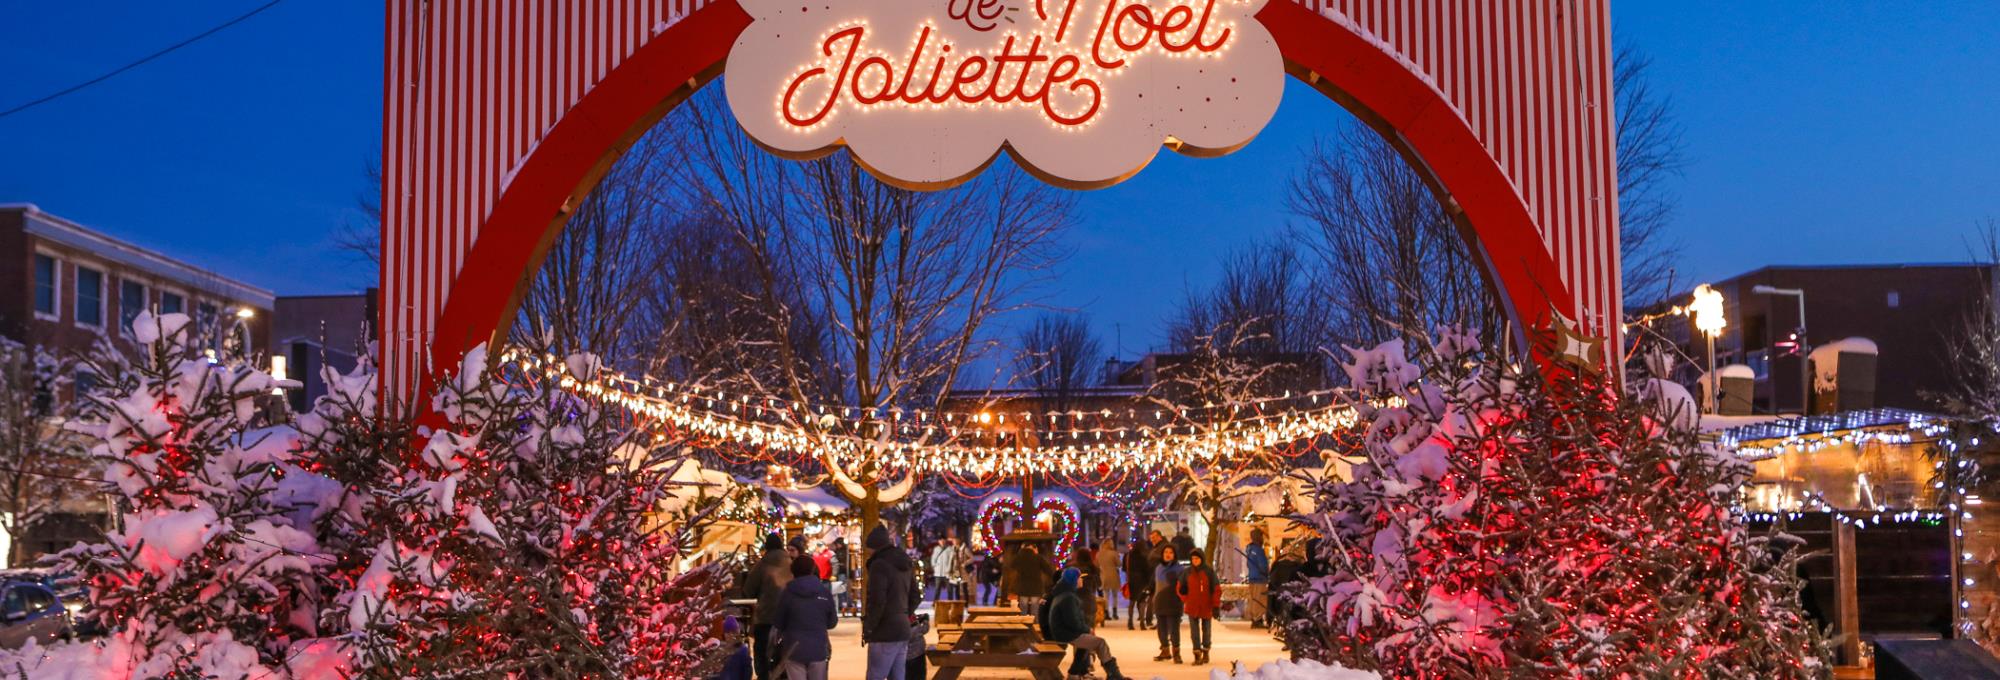 Le marché de Noël de Joliette - 1